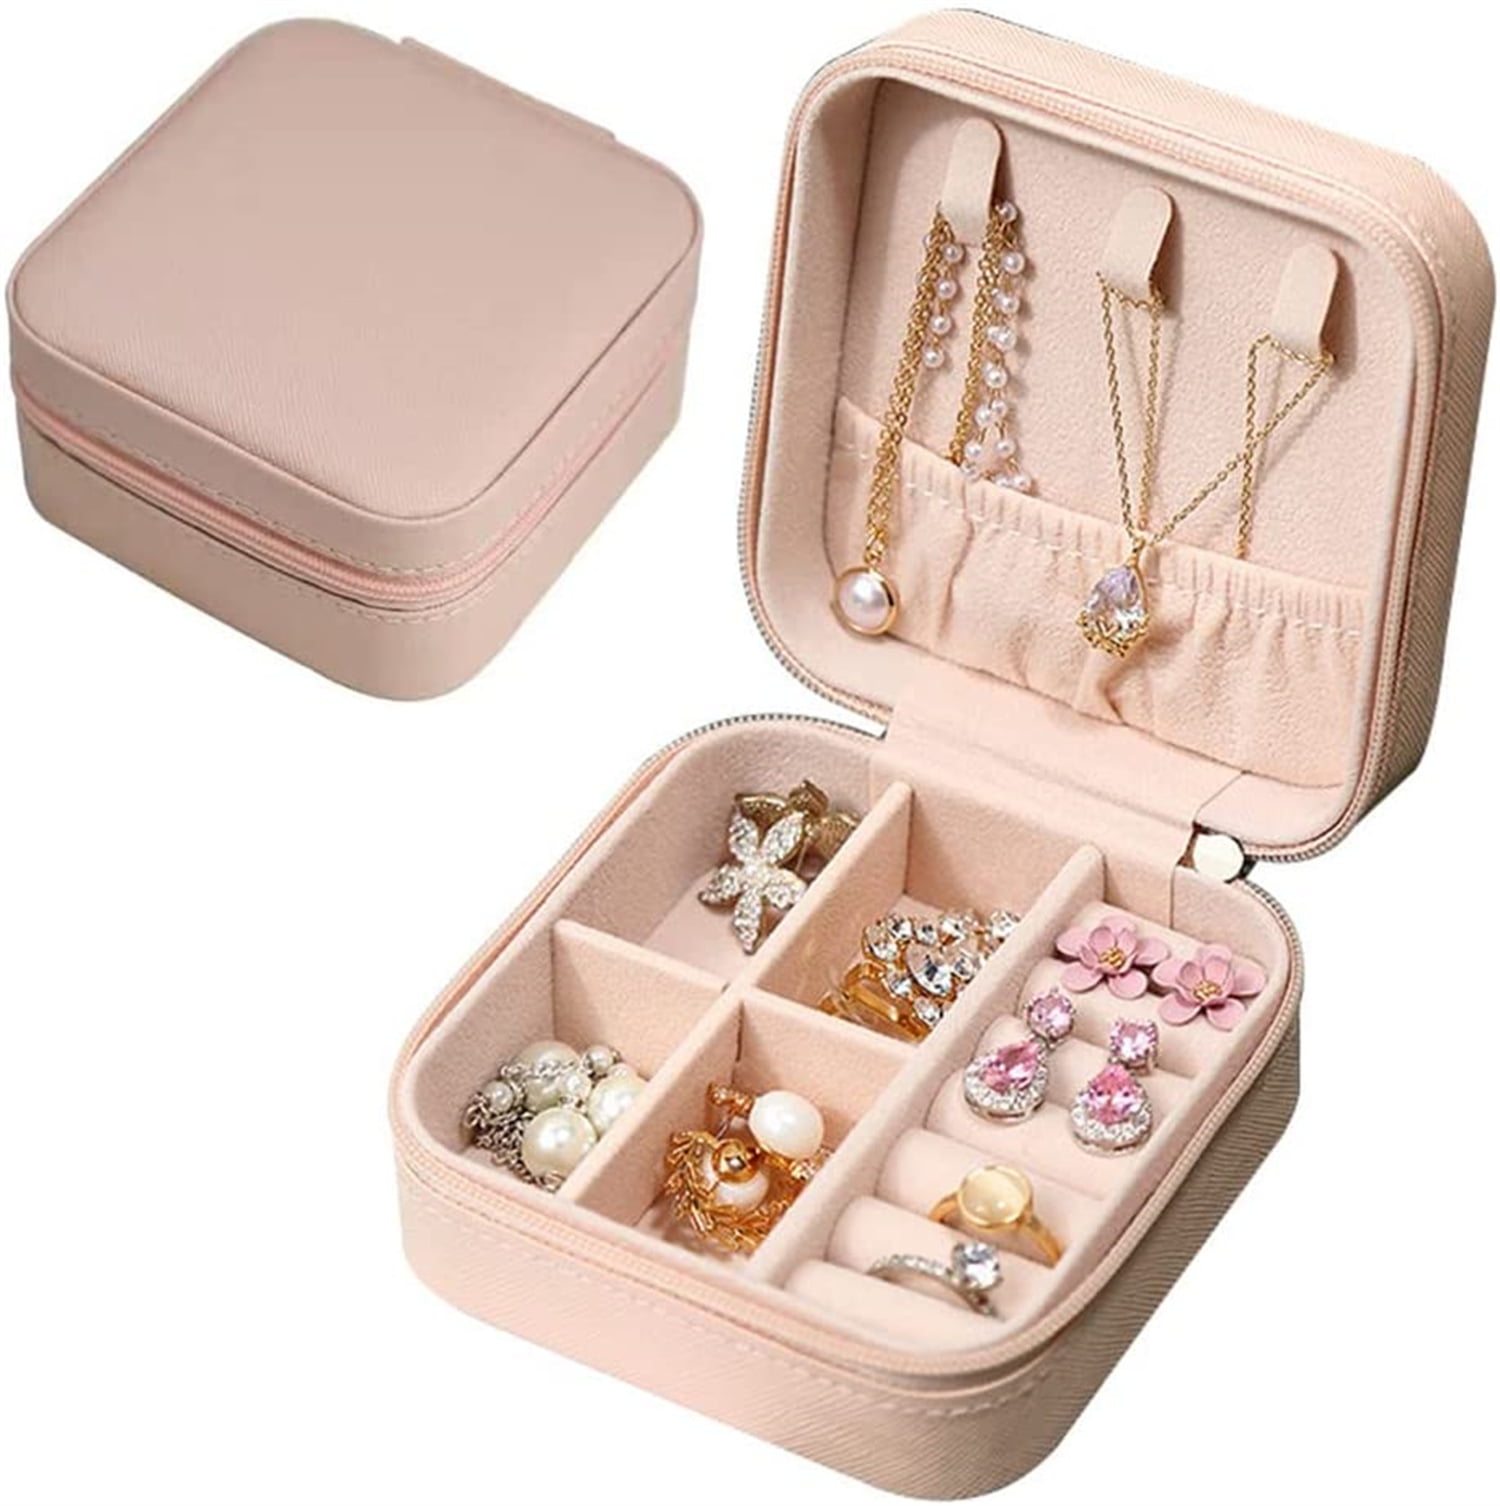 LOYEJEGL Stitch Travel Jewelry Box for Girls Women, PU Leather Small  Jewelry Storage+Makeup Mirror,| Jewelry Organizer Bag | Jewelry Case for